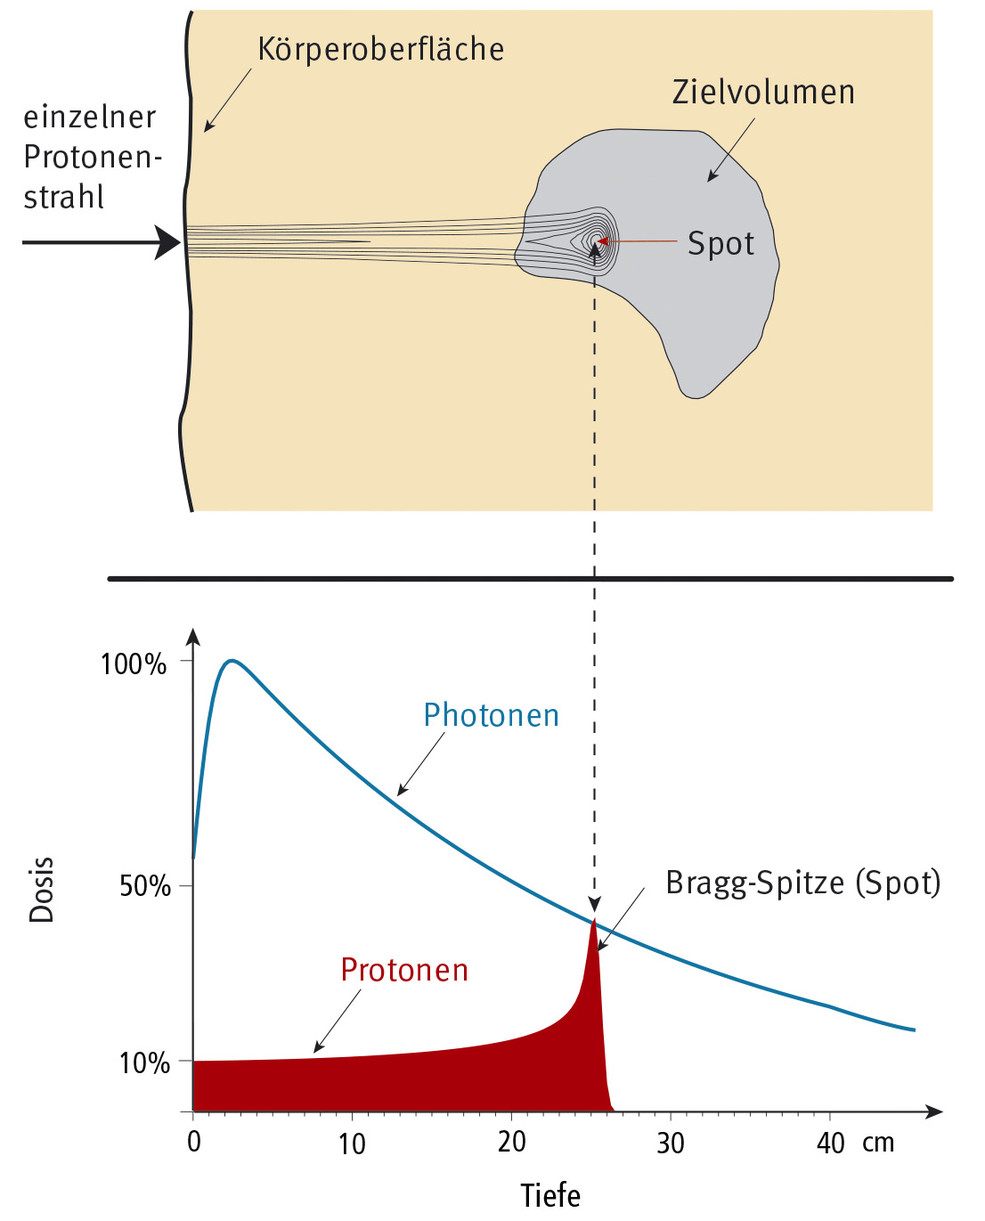 Strahlendosis eines Protonen-Bleistiftstrahls entlang der Eindringtiefe in den Körper. Die Reichweite dieser Protonen ist 25 cm. Oben die als Höhenlinien dargestellte Dosisverteilung, unten die Dosiswerte längs der Tiefe, im Vergleich mit einem Photonen-Dosis­verlauf.